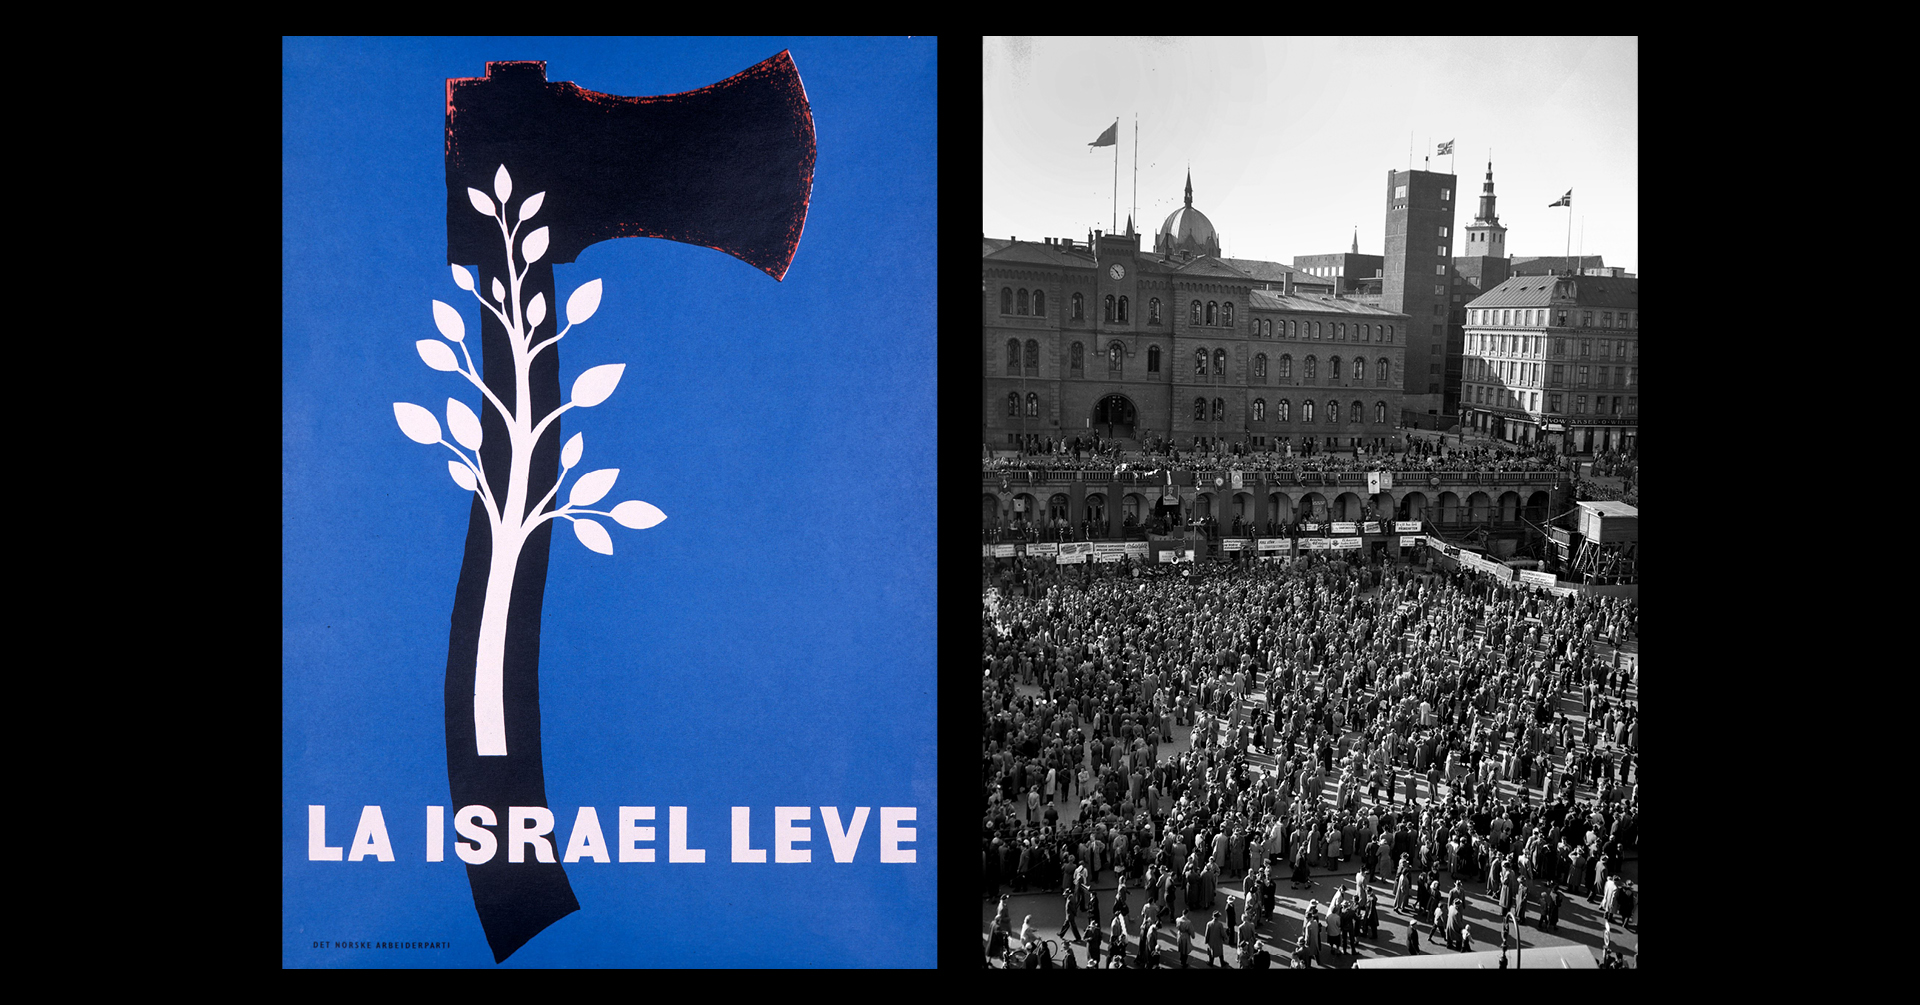 Plakat med påskriften "La Israel leve" og foto fra 1. mai på Youngstorget i 1965